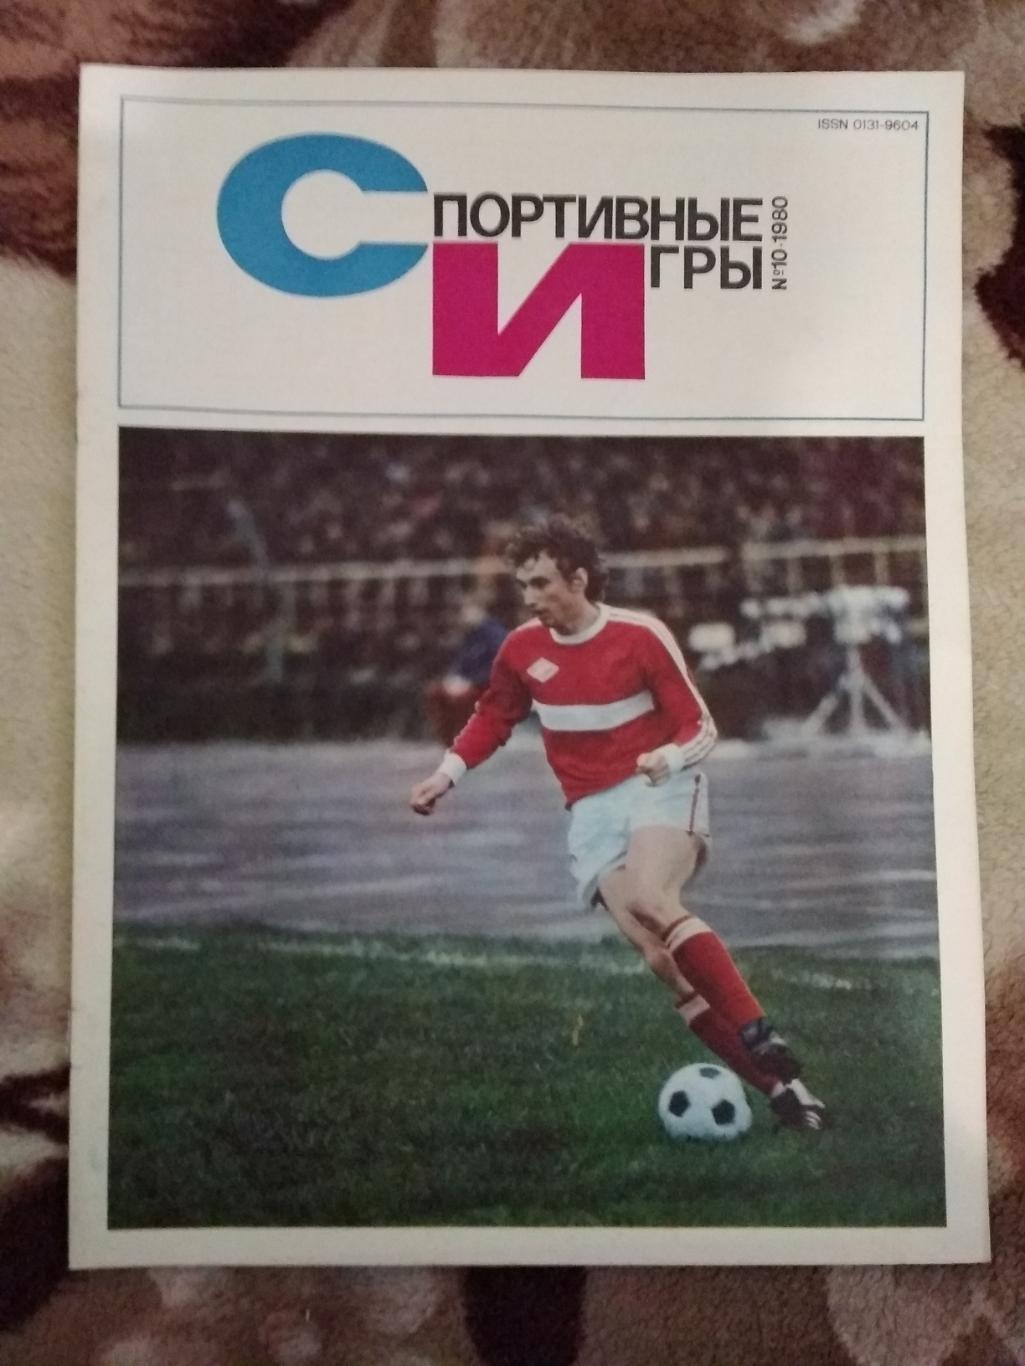 Журнал.Спортивные игры № 10 1980 г.